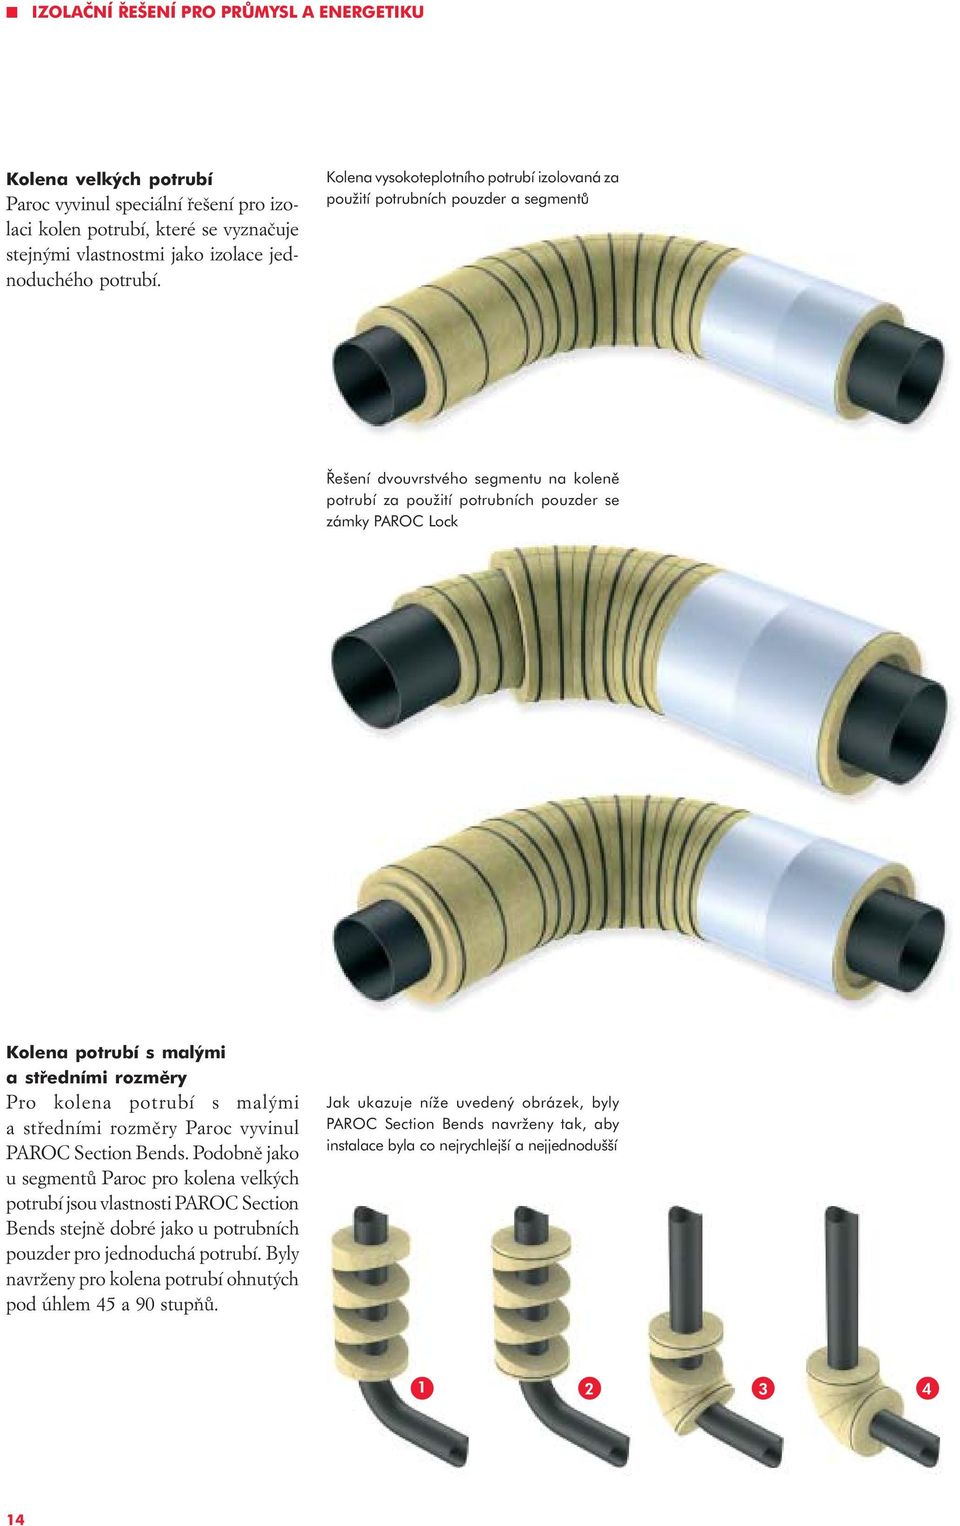 malými a støedními rozmìry Pro kolena potrubí s malými a støedními rozmìry Paroc vyvinul PAROC Section Bends.